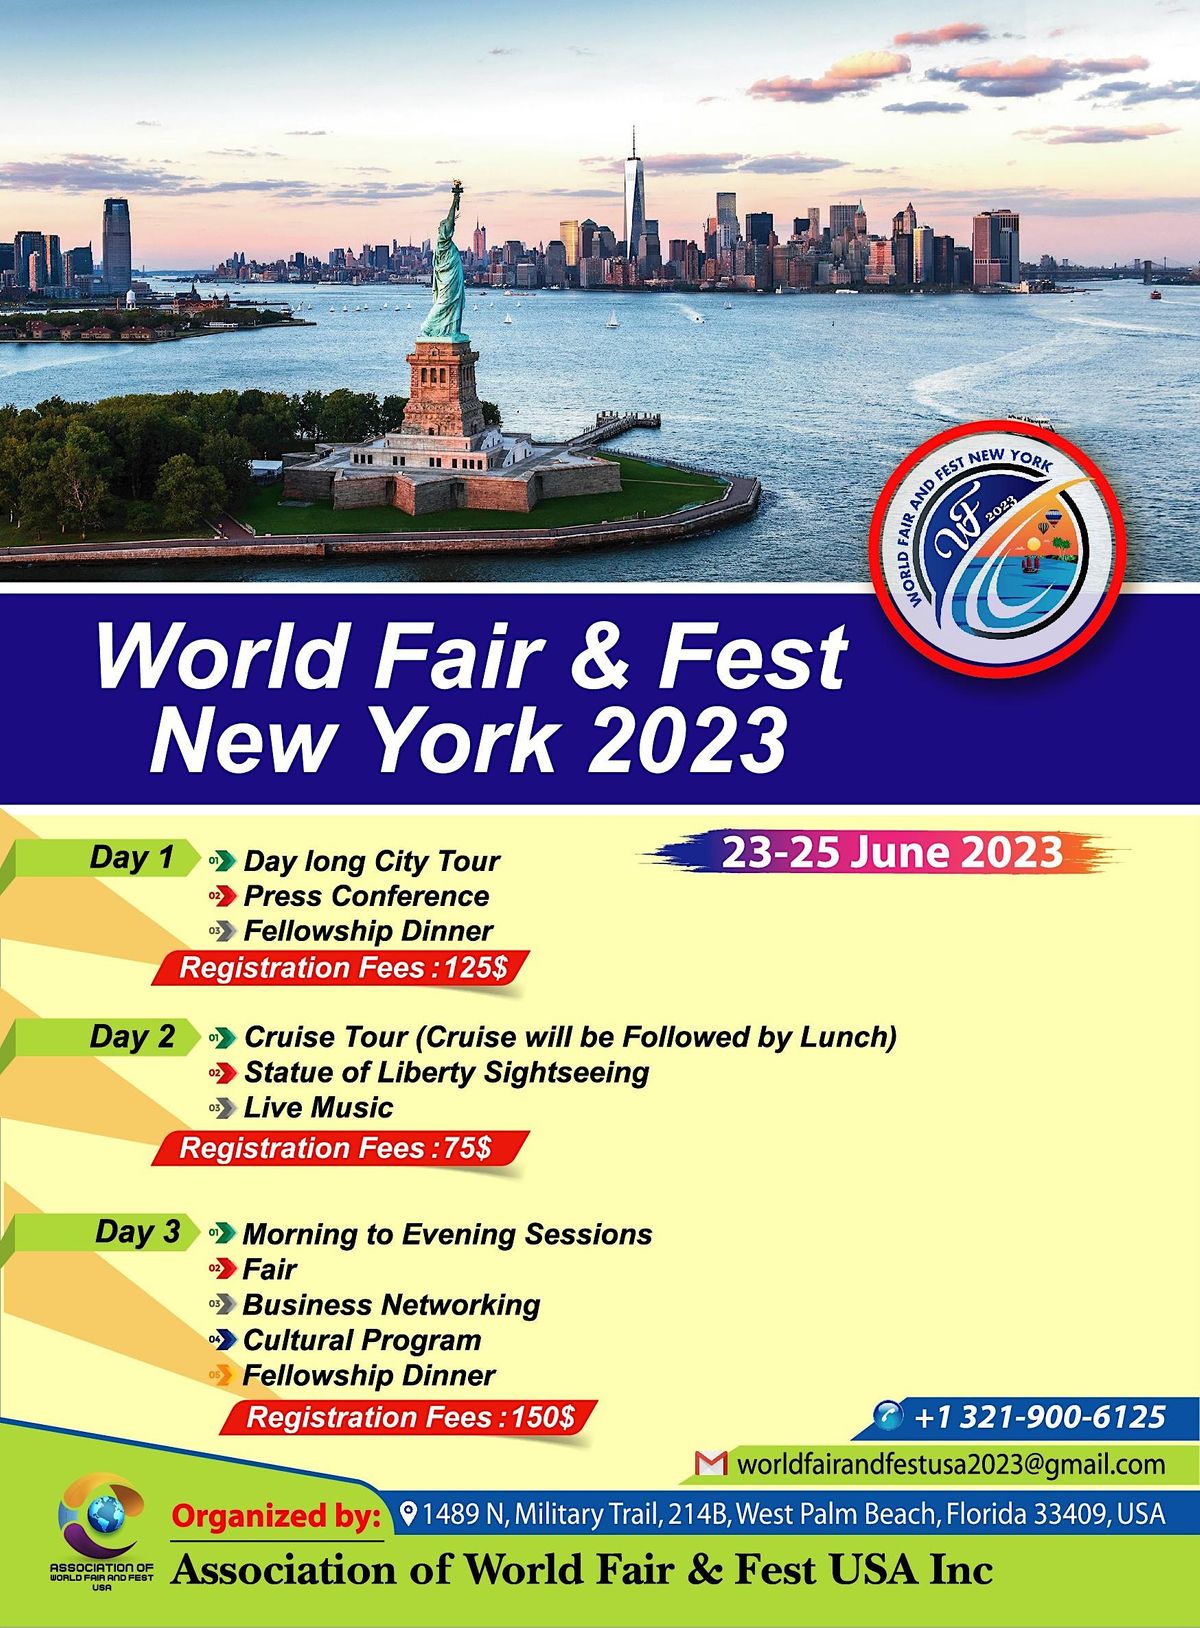 WORLD FAIR AND FEST NEW YORK 2023